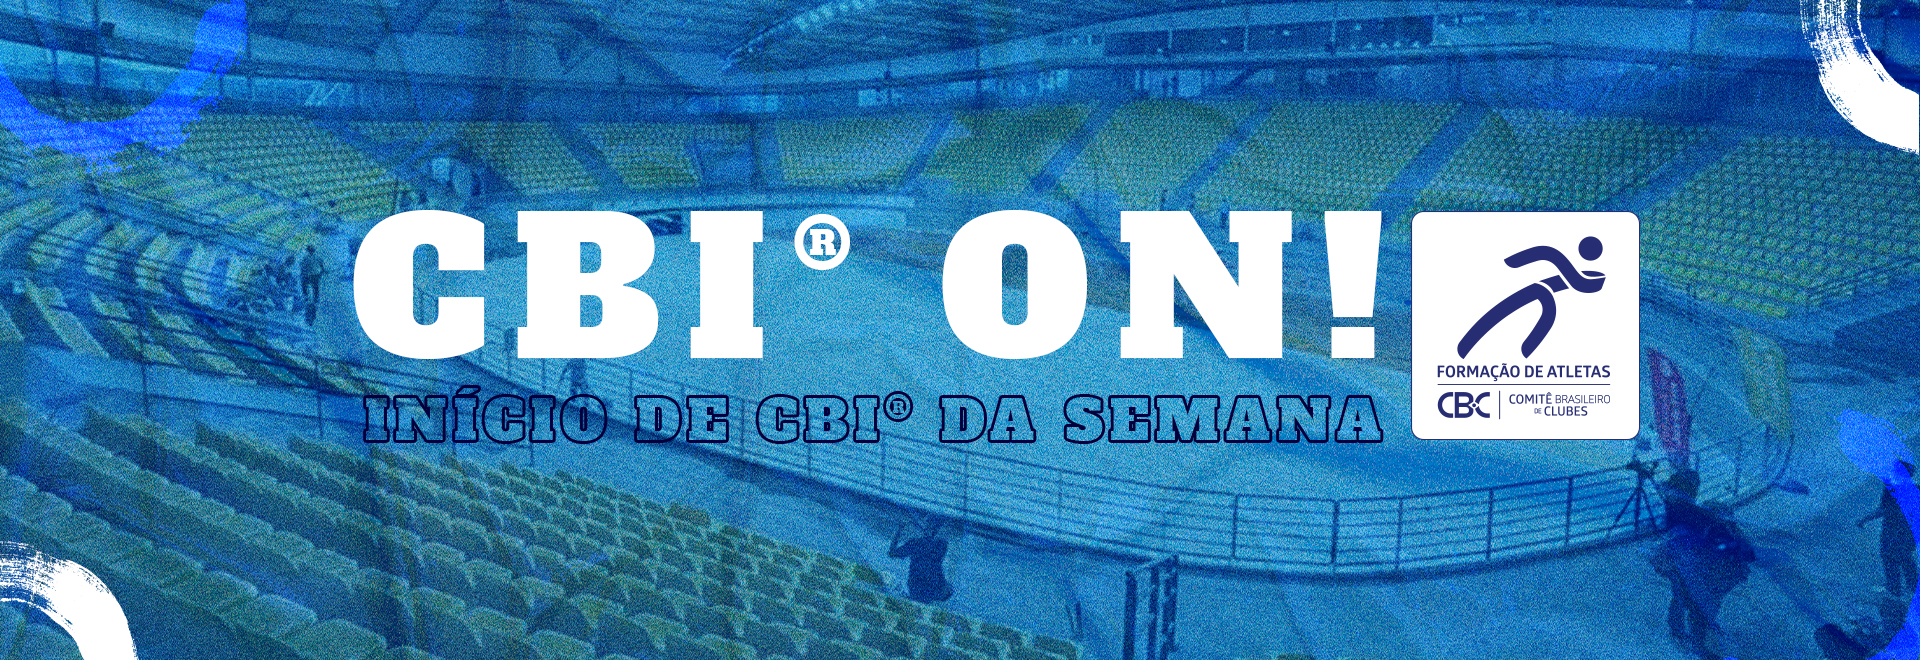 CBI ON®: Semana agitada no esporte brasileiros com o início de competições em diversas modalidades 